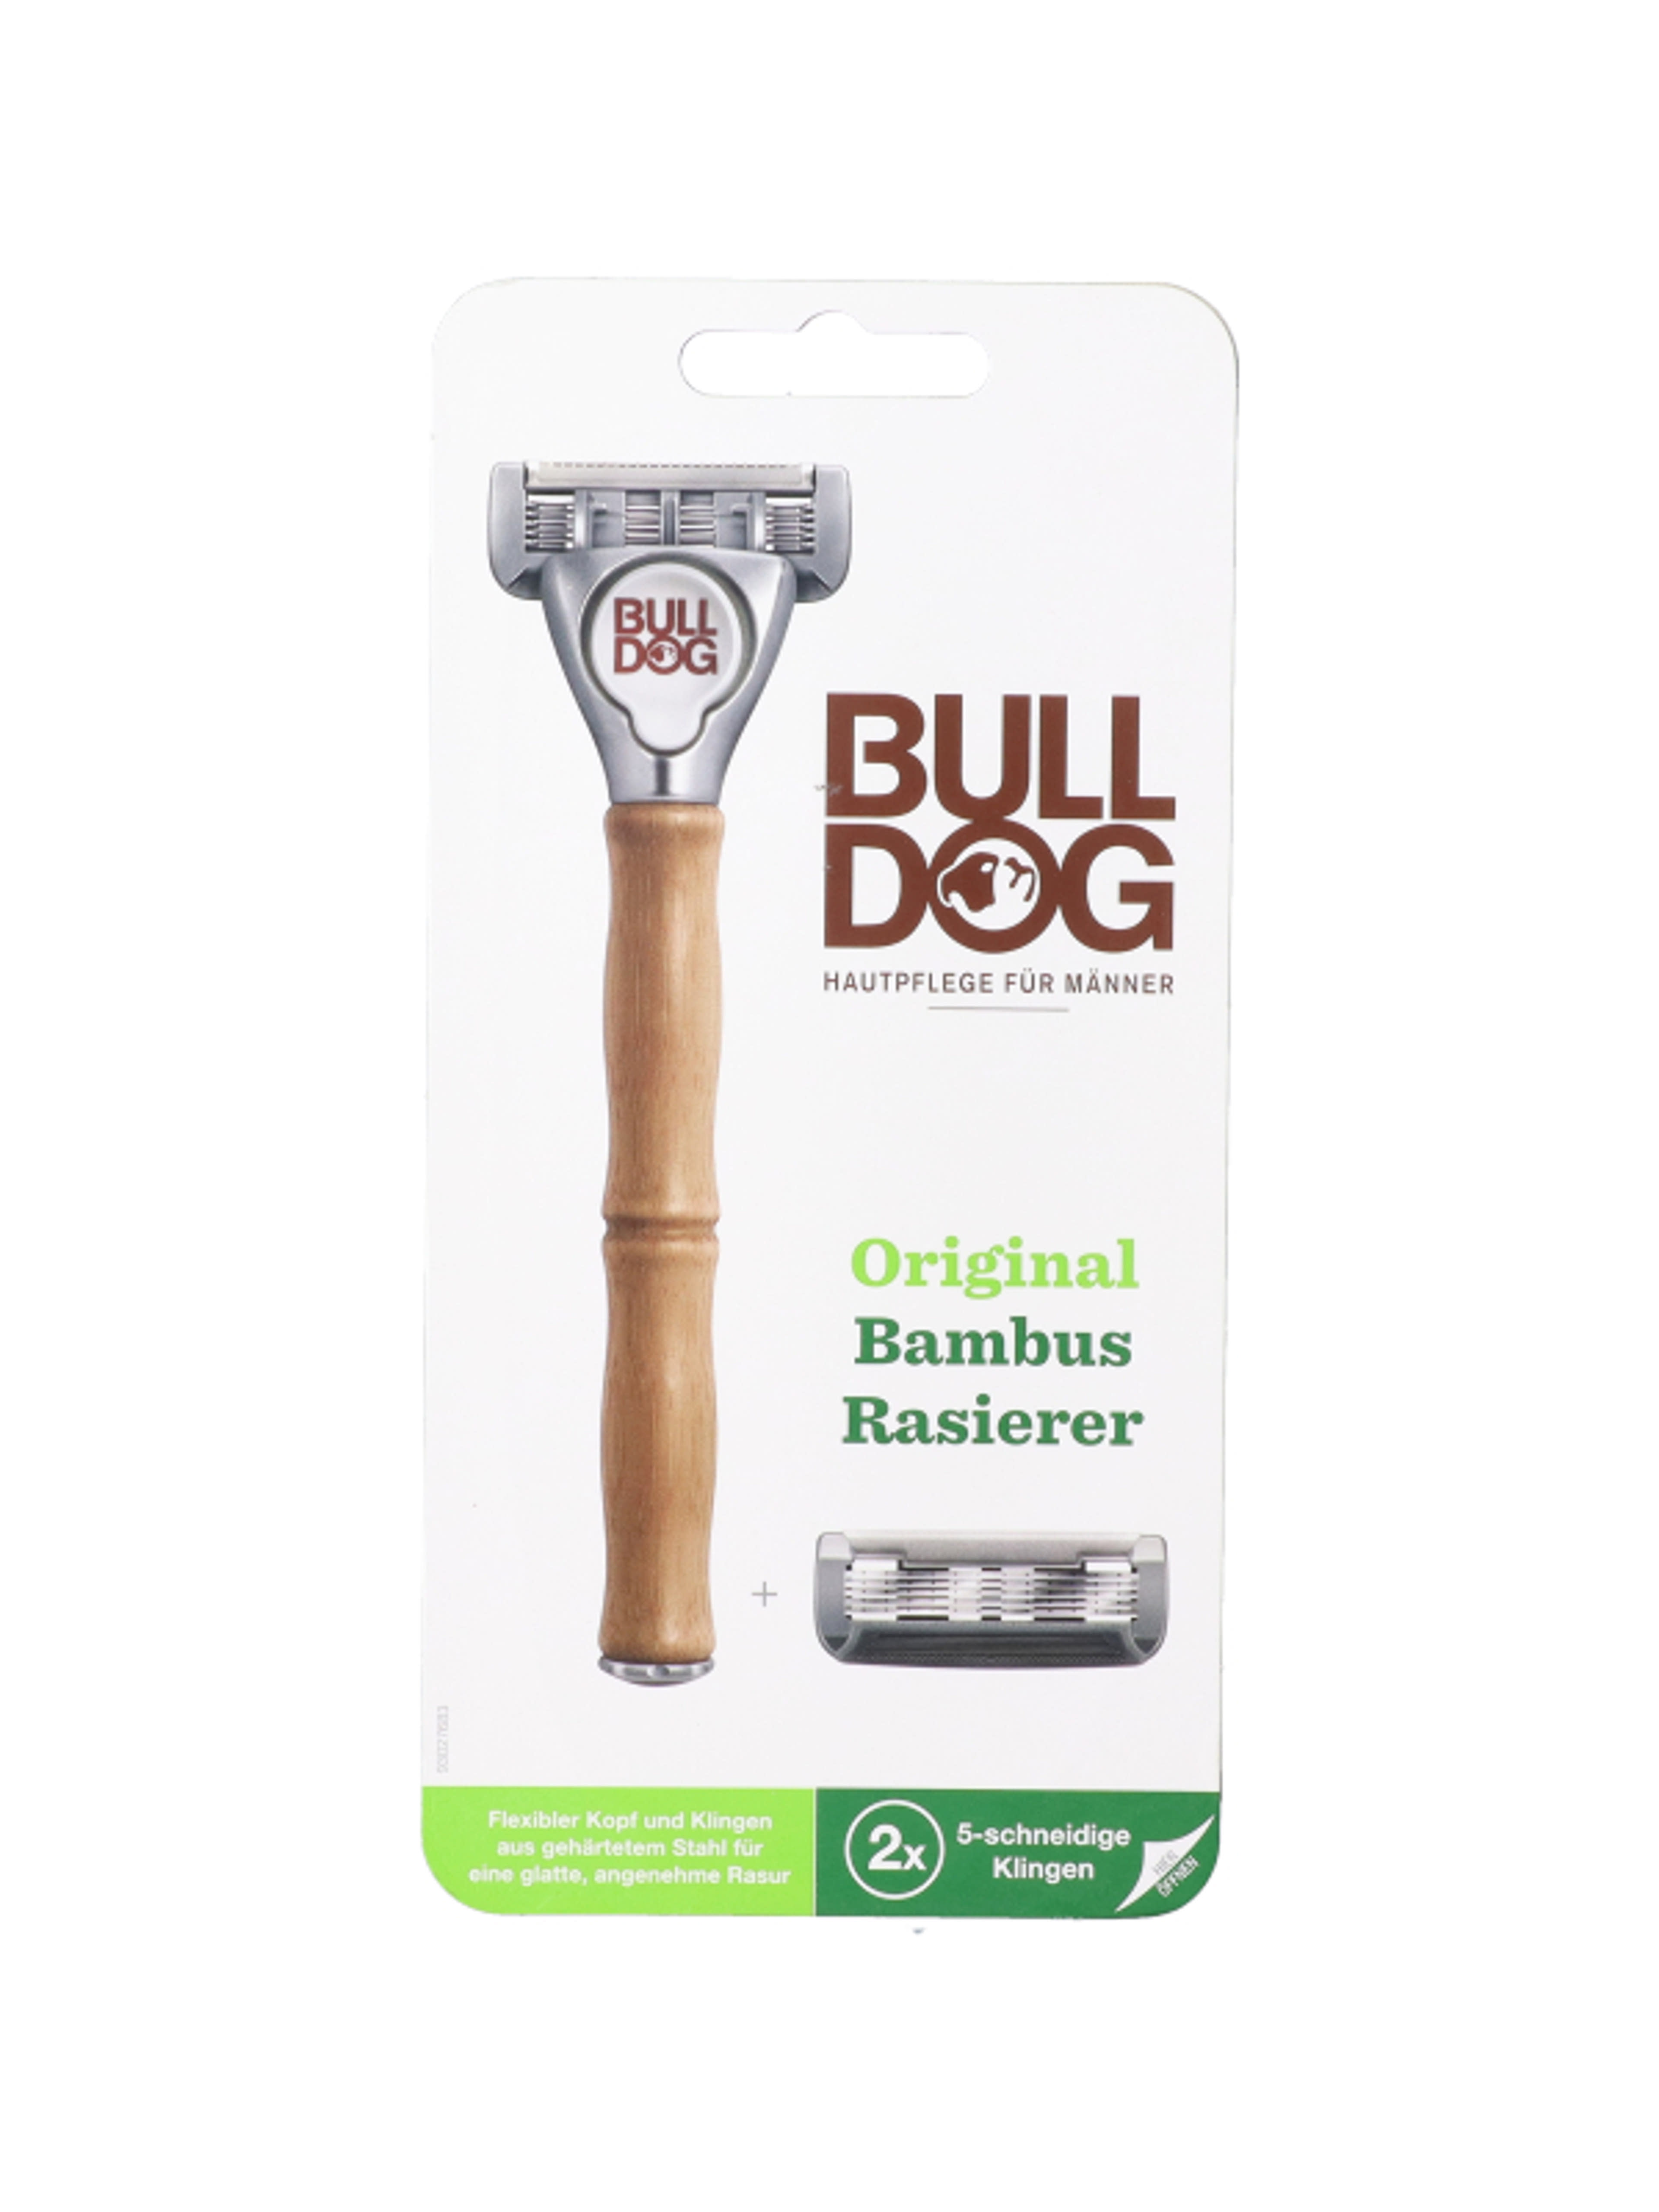 Bulldog borotvakészülék 5 pengés, 2 betéttel - 1 db-1